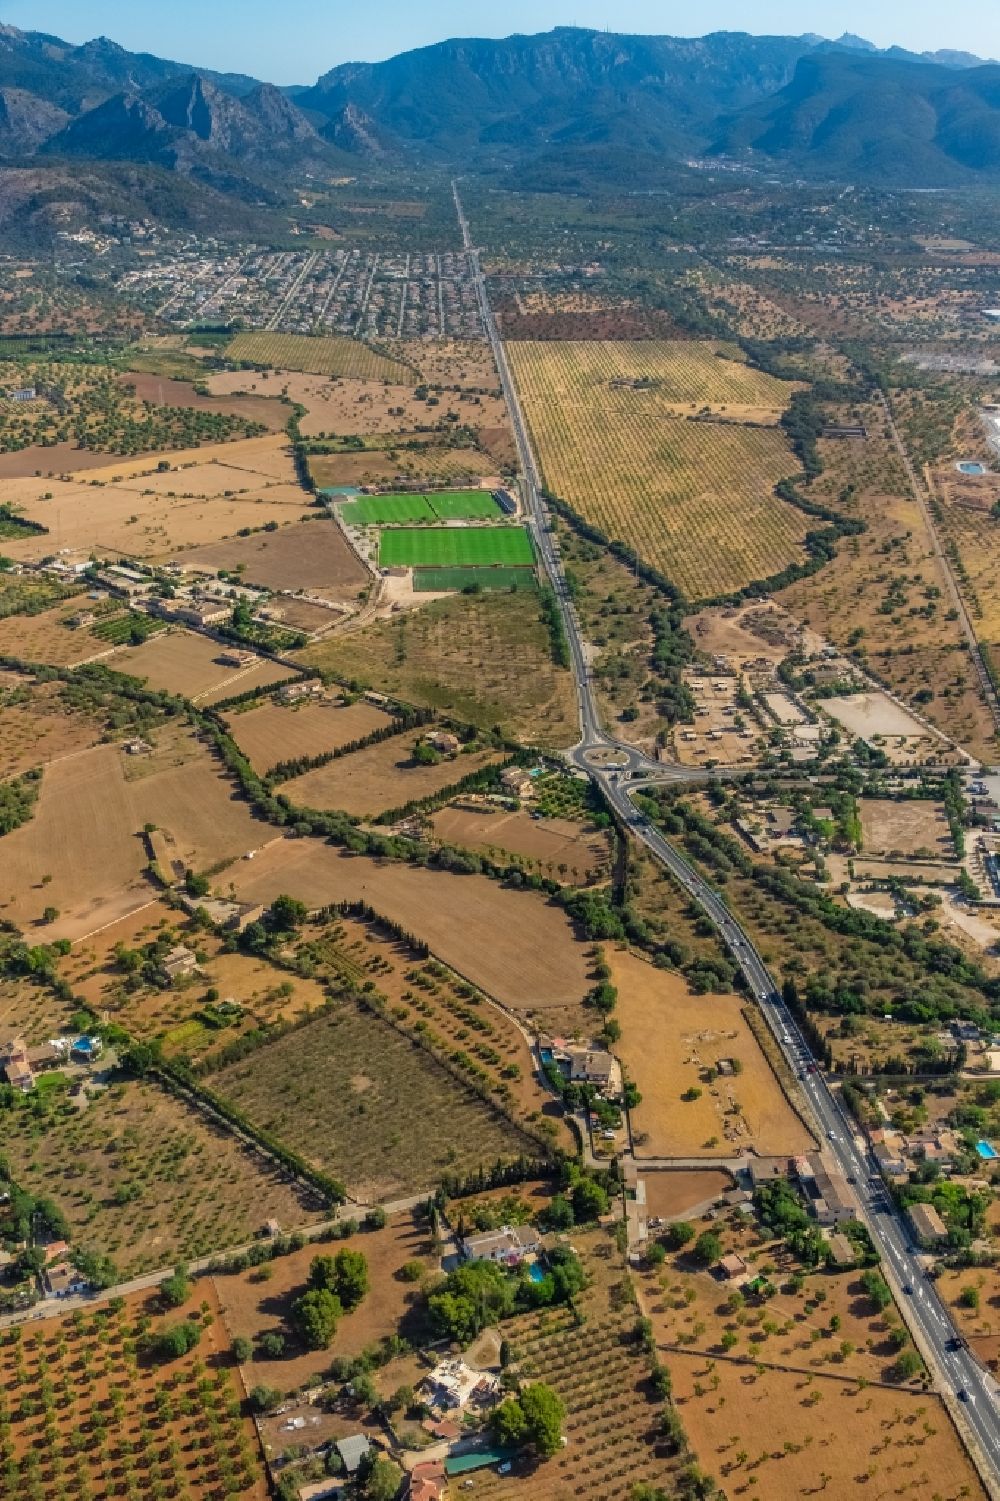 Luftbild Palma - Straßenführung der Ma-11 mit Blick auf den Komplex der hiesigen Sportplatzanlagen in Palma in Balearische Insel Mallorca, Spanien